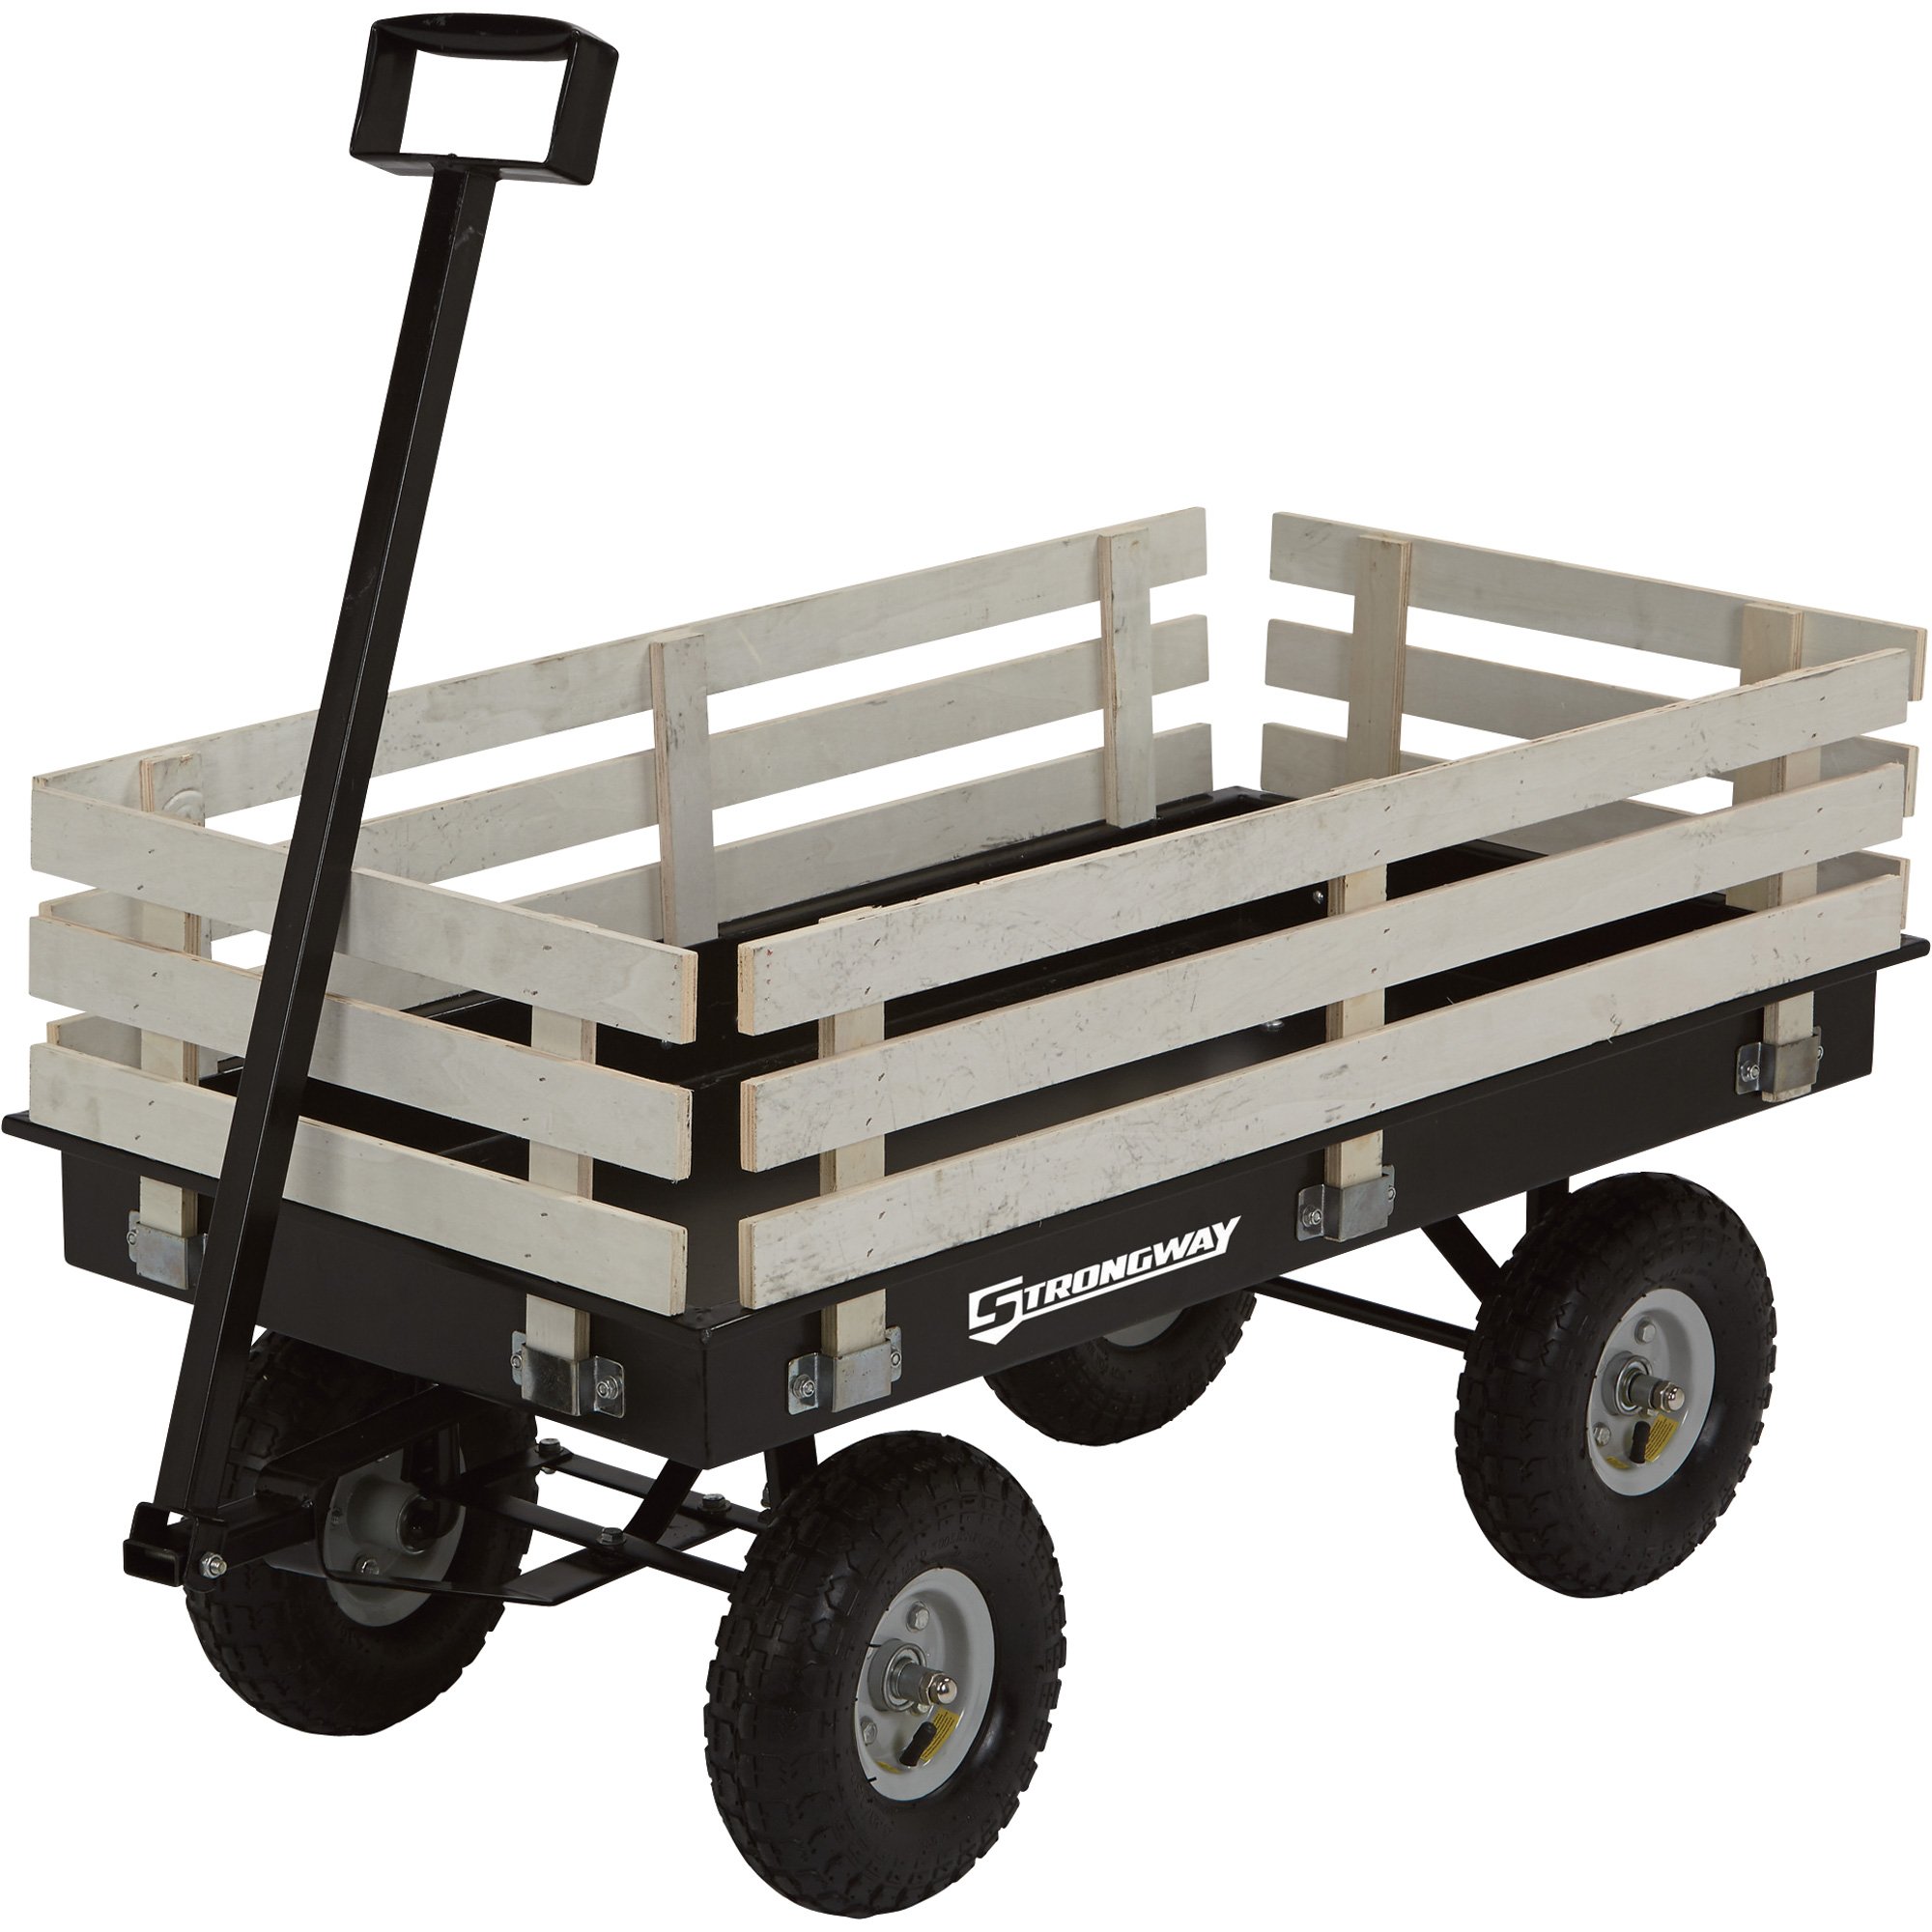 Garden Cart - Medium, Garden Wagon